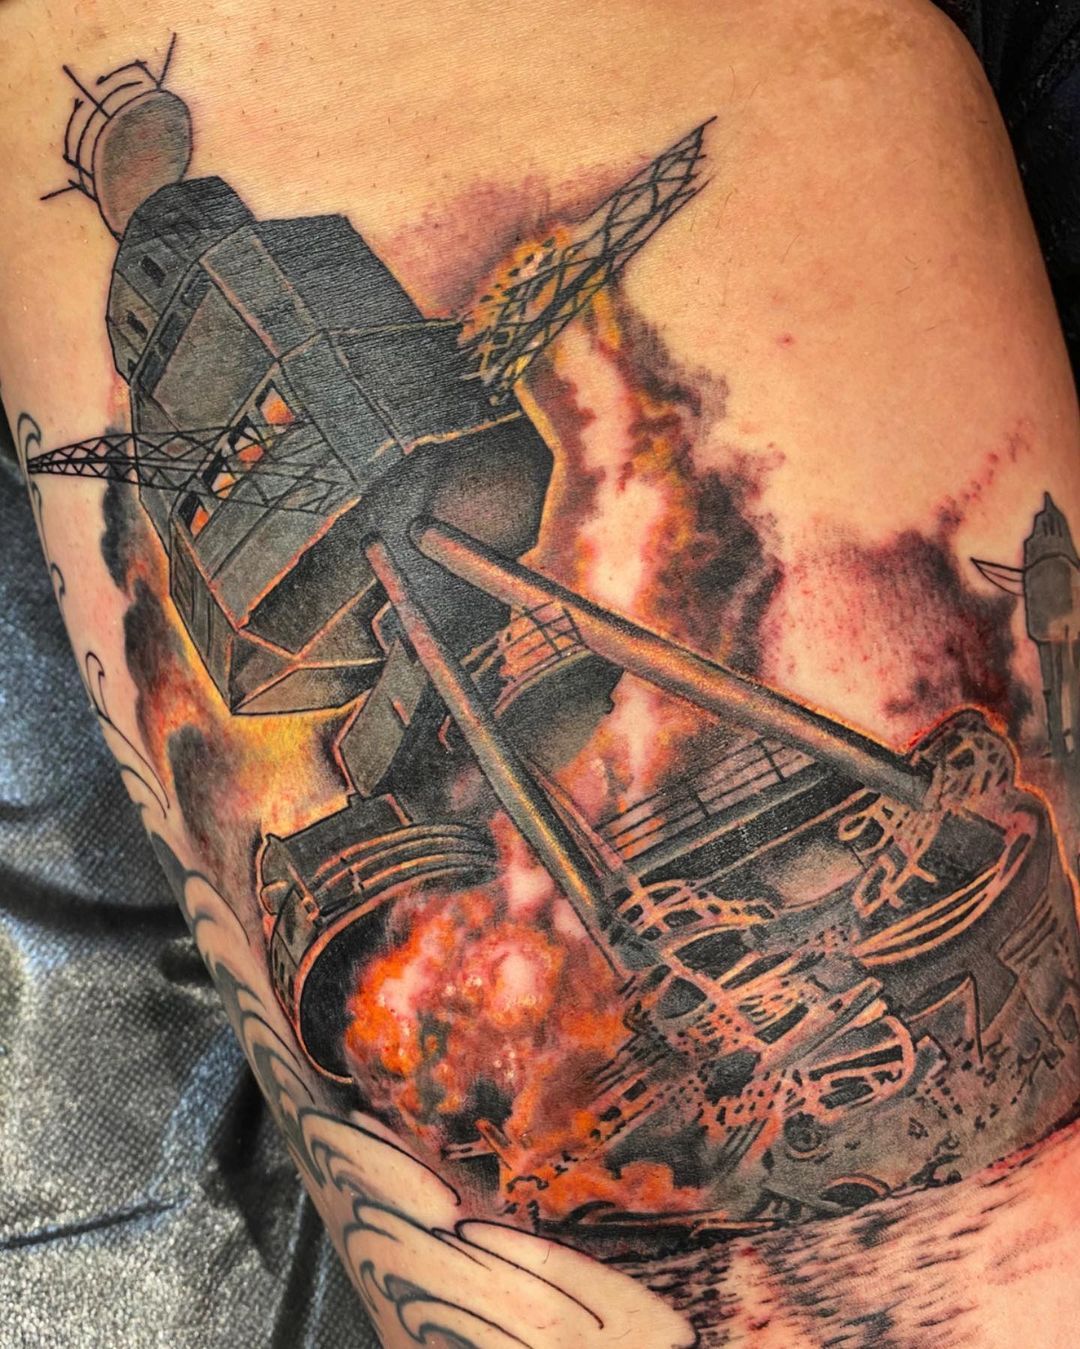 Broken Art Tattoo — Casualties of war. On the gentlemanly...